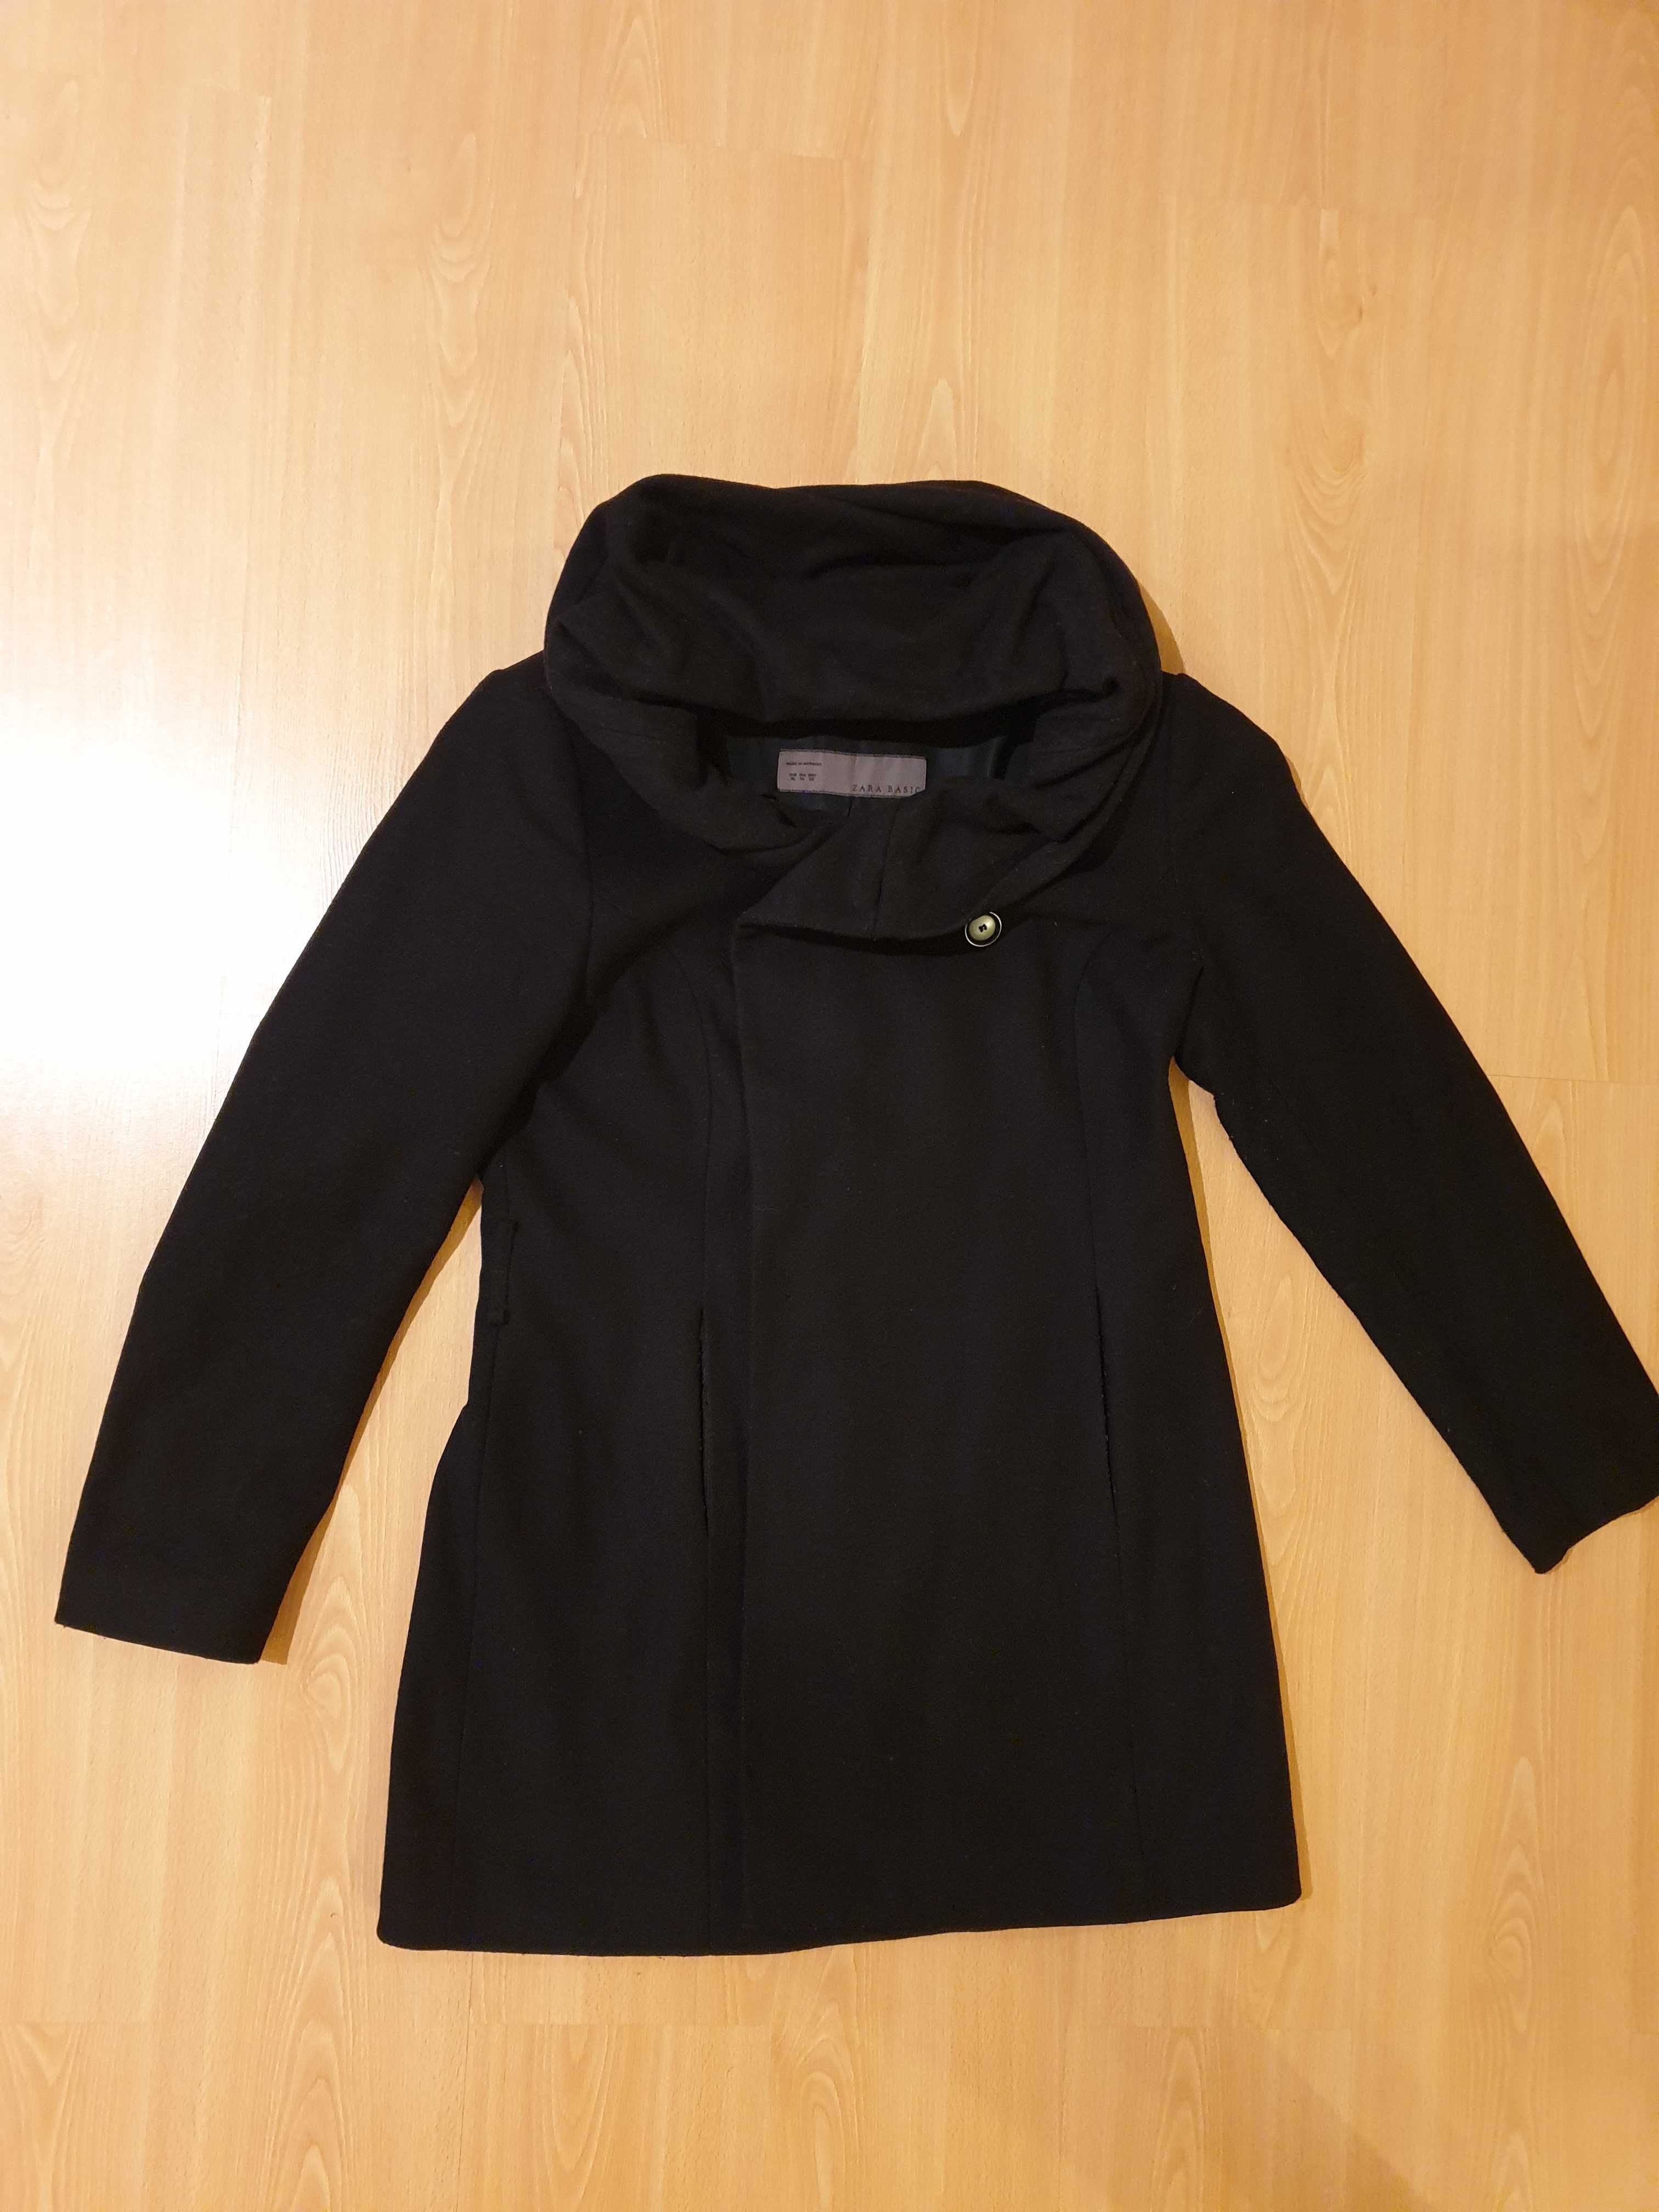 Damski czarny płaszcz Zara z szerokim kołnierzem, rozmiar XL